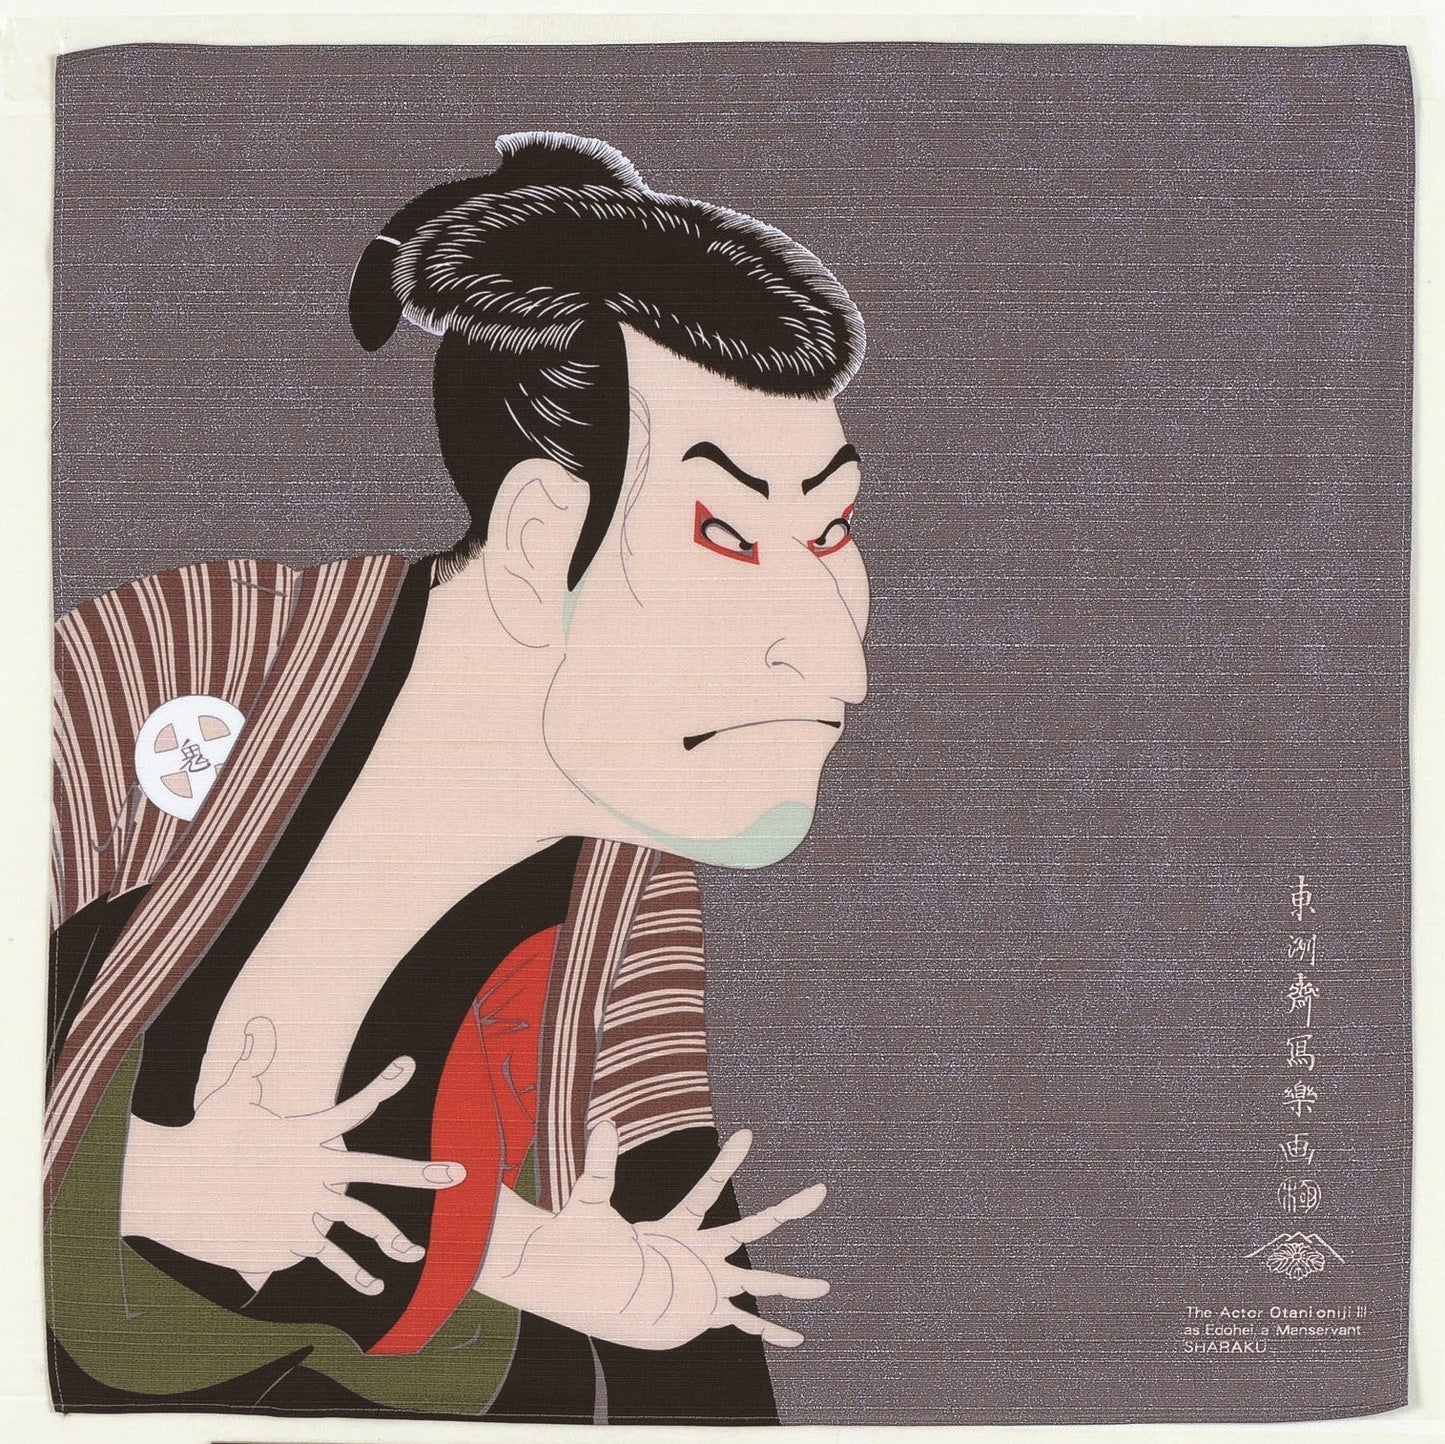 Furoshiki Sharaku Ukiyo-e 48cm | L'attore Otani Oniji III nel ruolo di Edobe